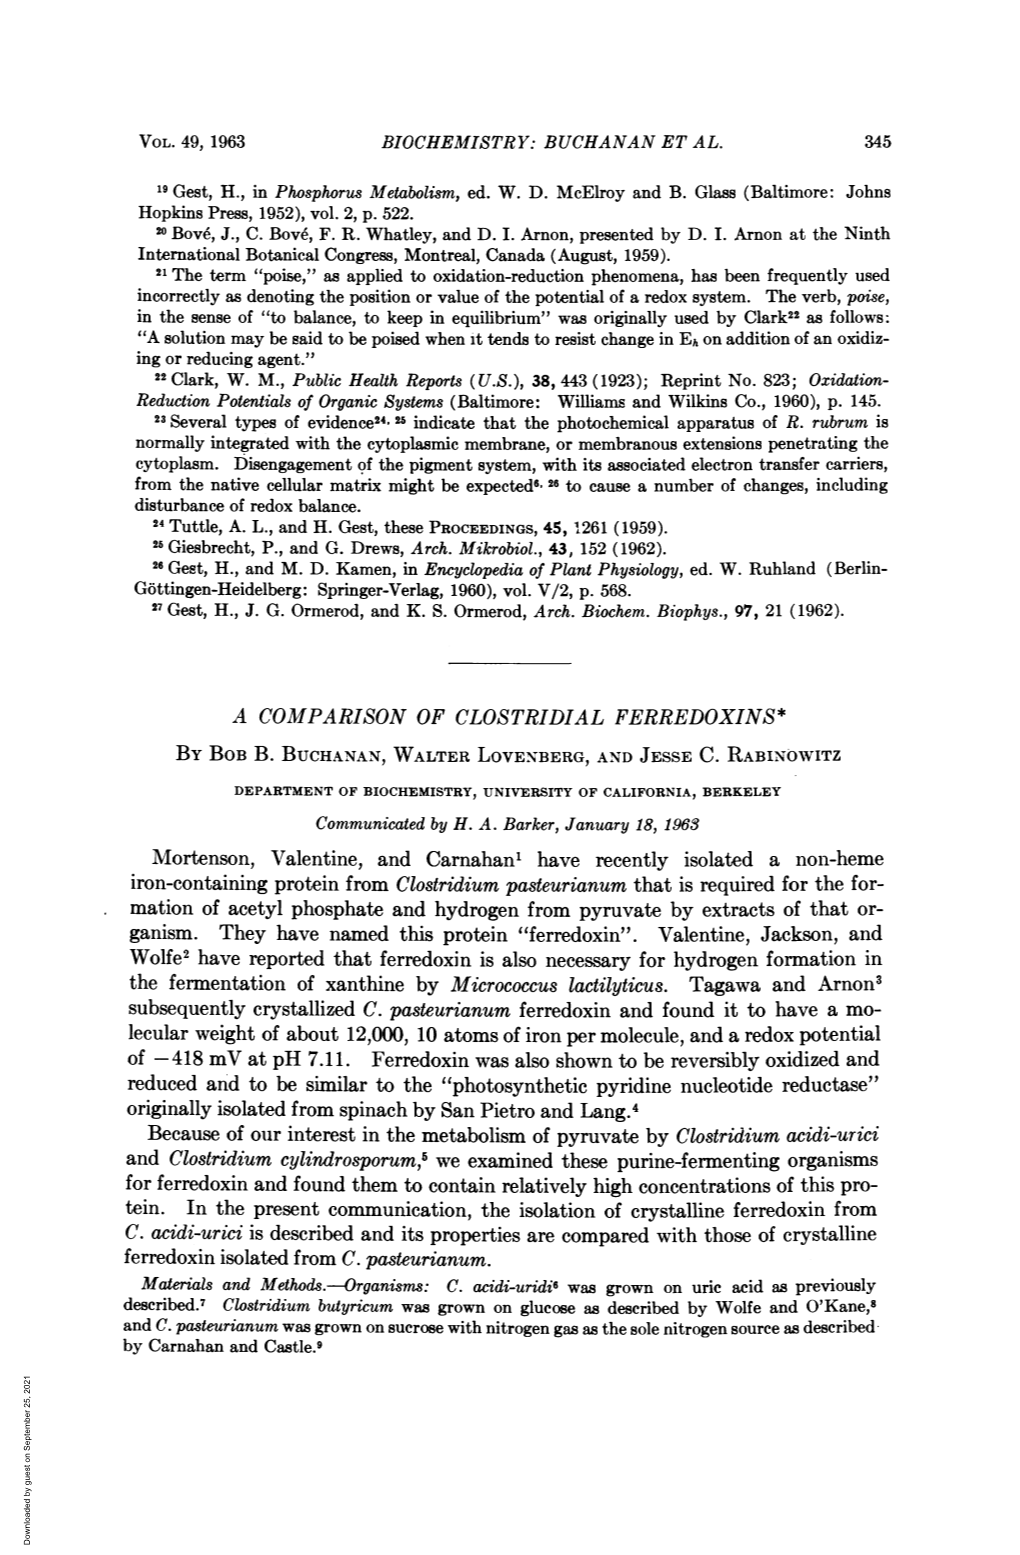 A COMPARISON of CLOSTRIDIAL FERREDOXINS* Mortenson